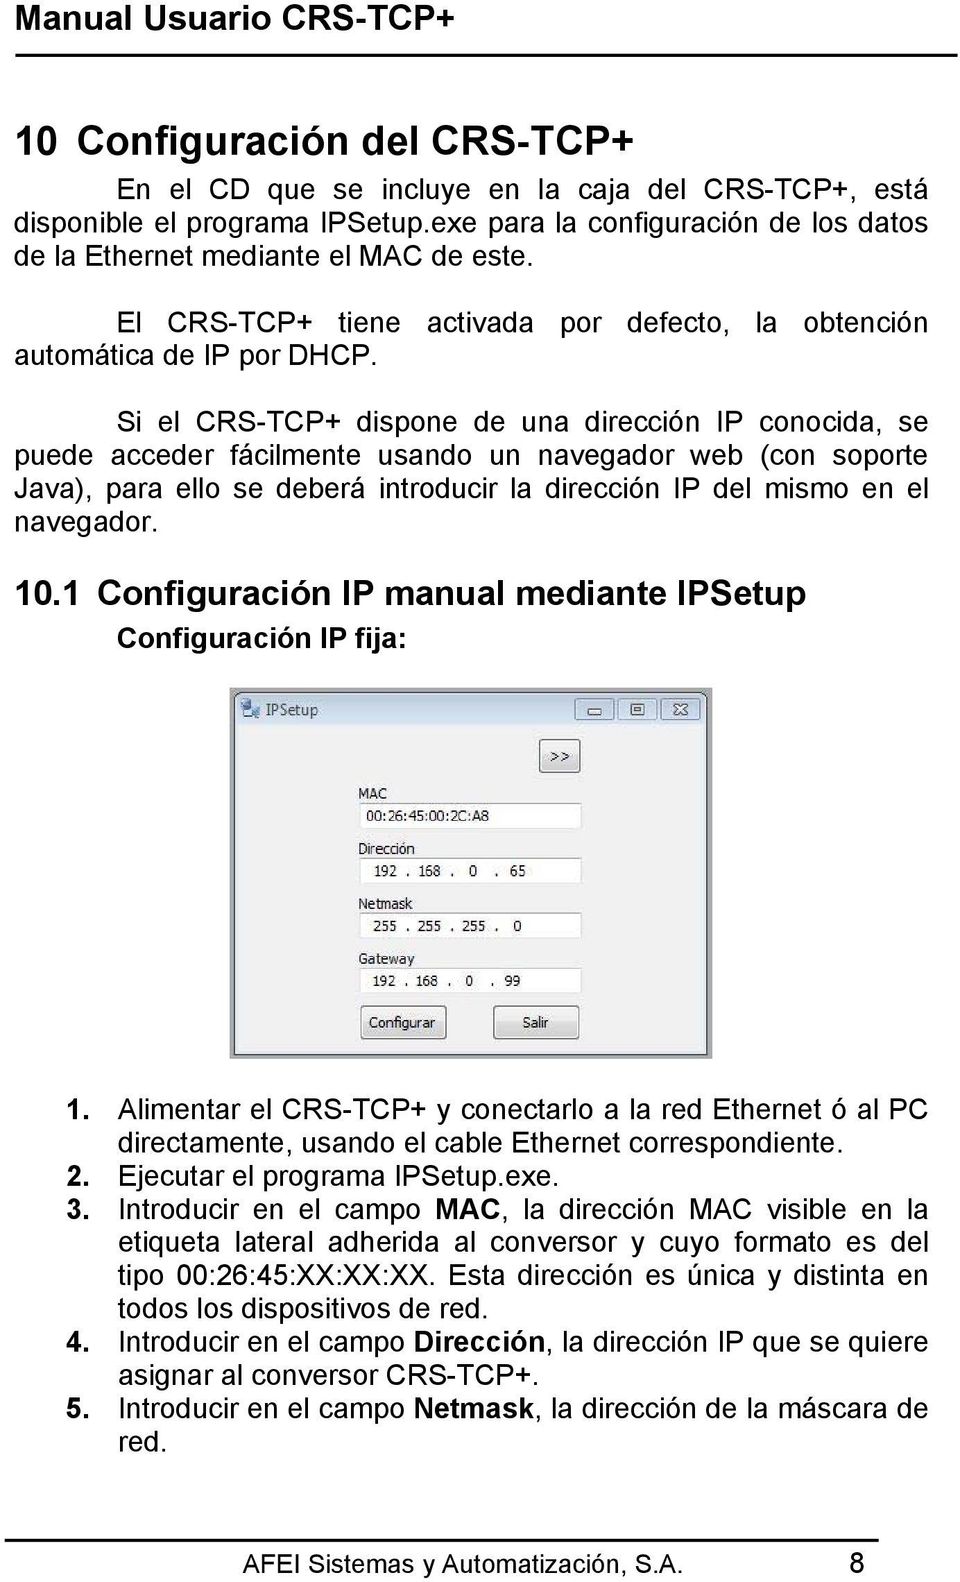 Si el CRS-TCP+ dispone de una dirección IP conocida, se puede acceder fácilmente usando un navegador web (con soporte Java), para ello se deberá introducir la dirección IP del mismo en el navegador.